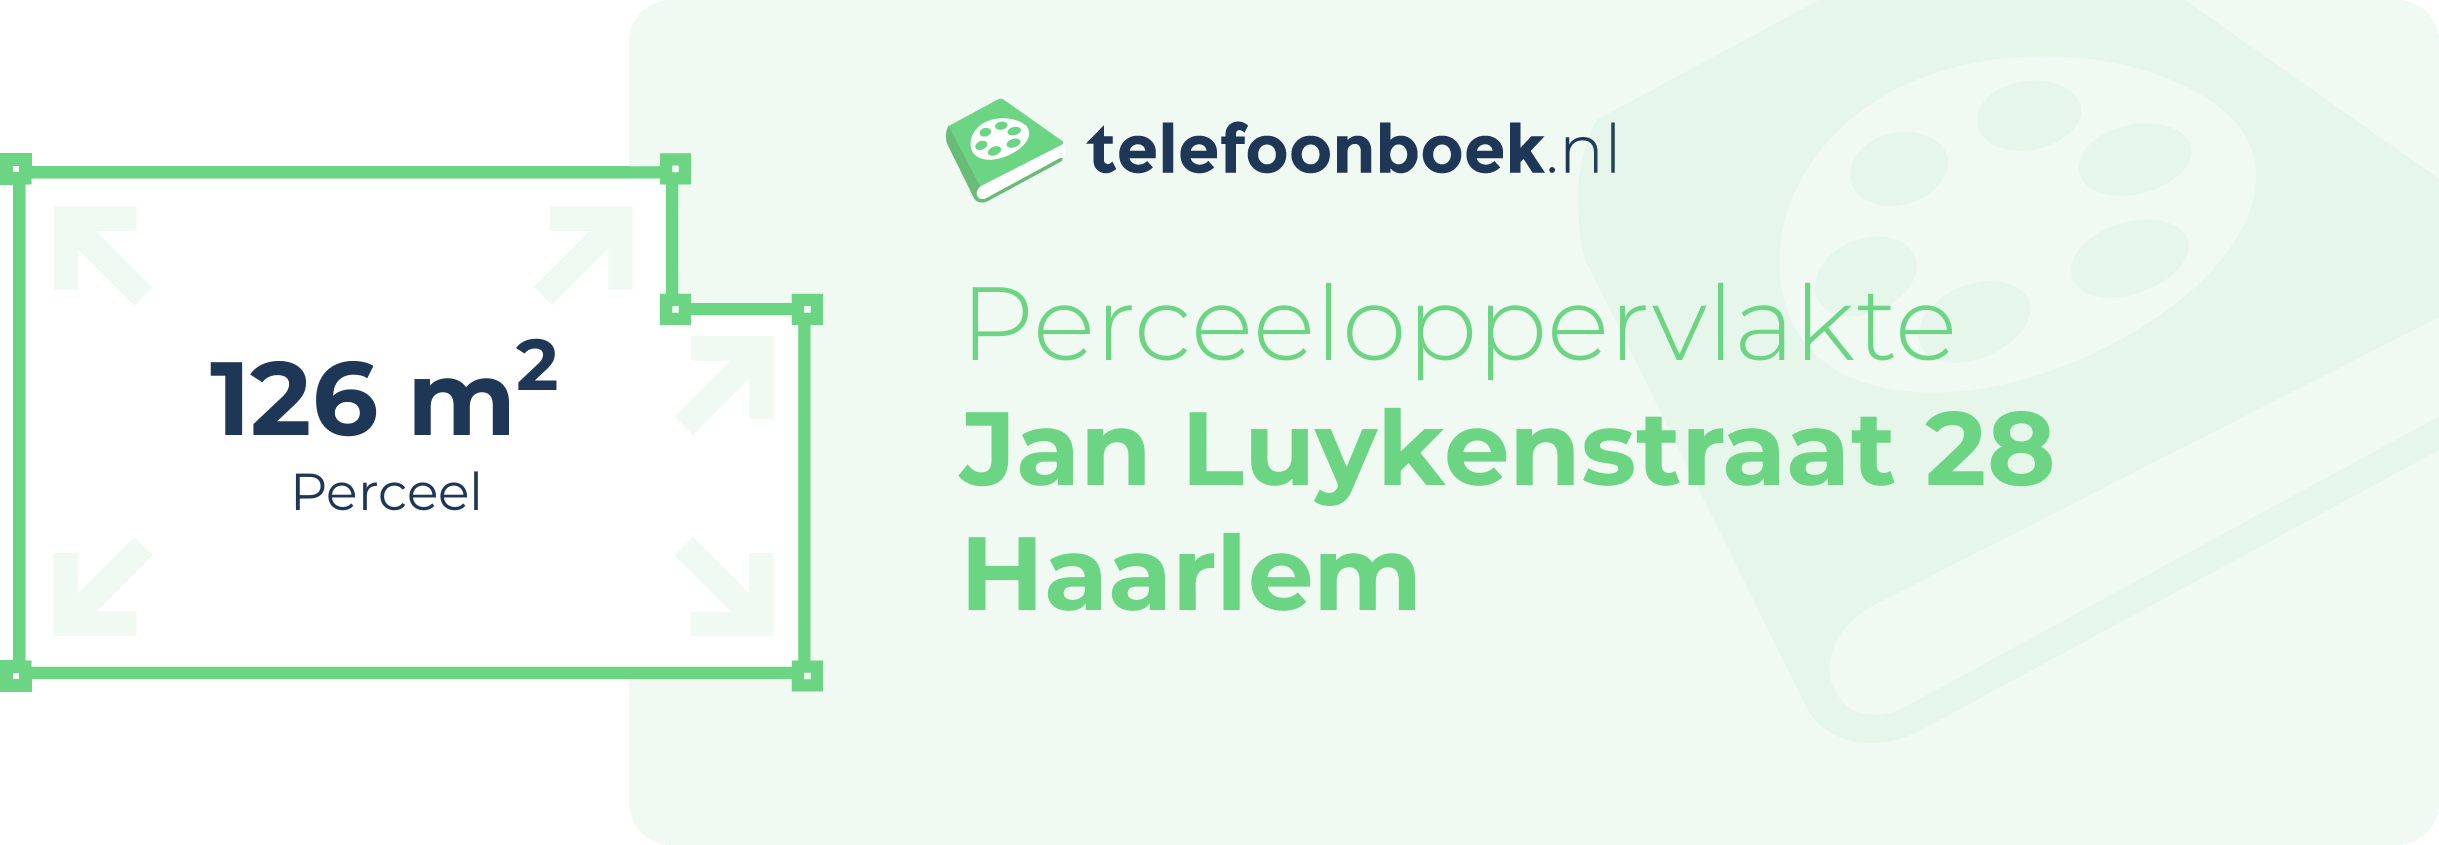 Perceeloppervlakte Jan Luykenstraat 28 Haarlem